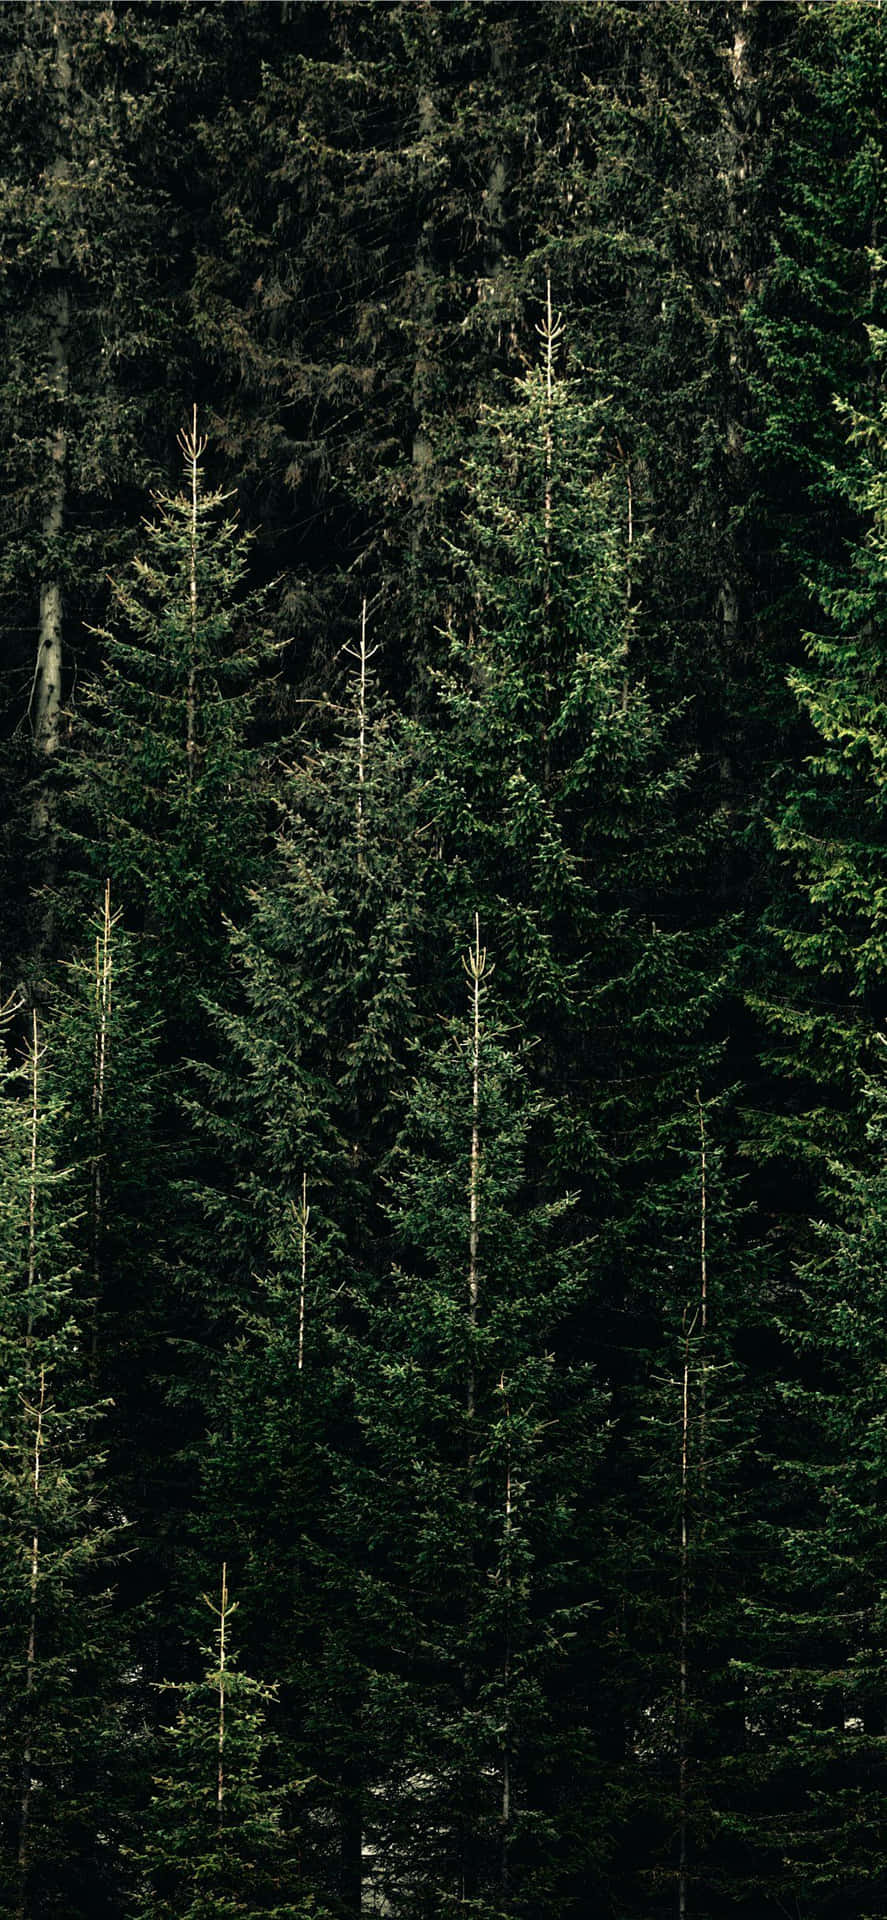 Dense Pine Forest Vertical View.jpg Wallpaper